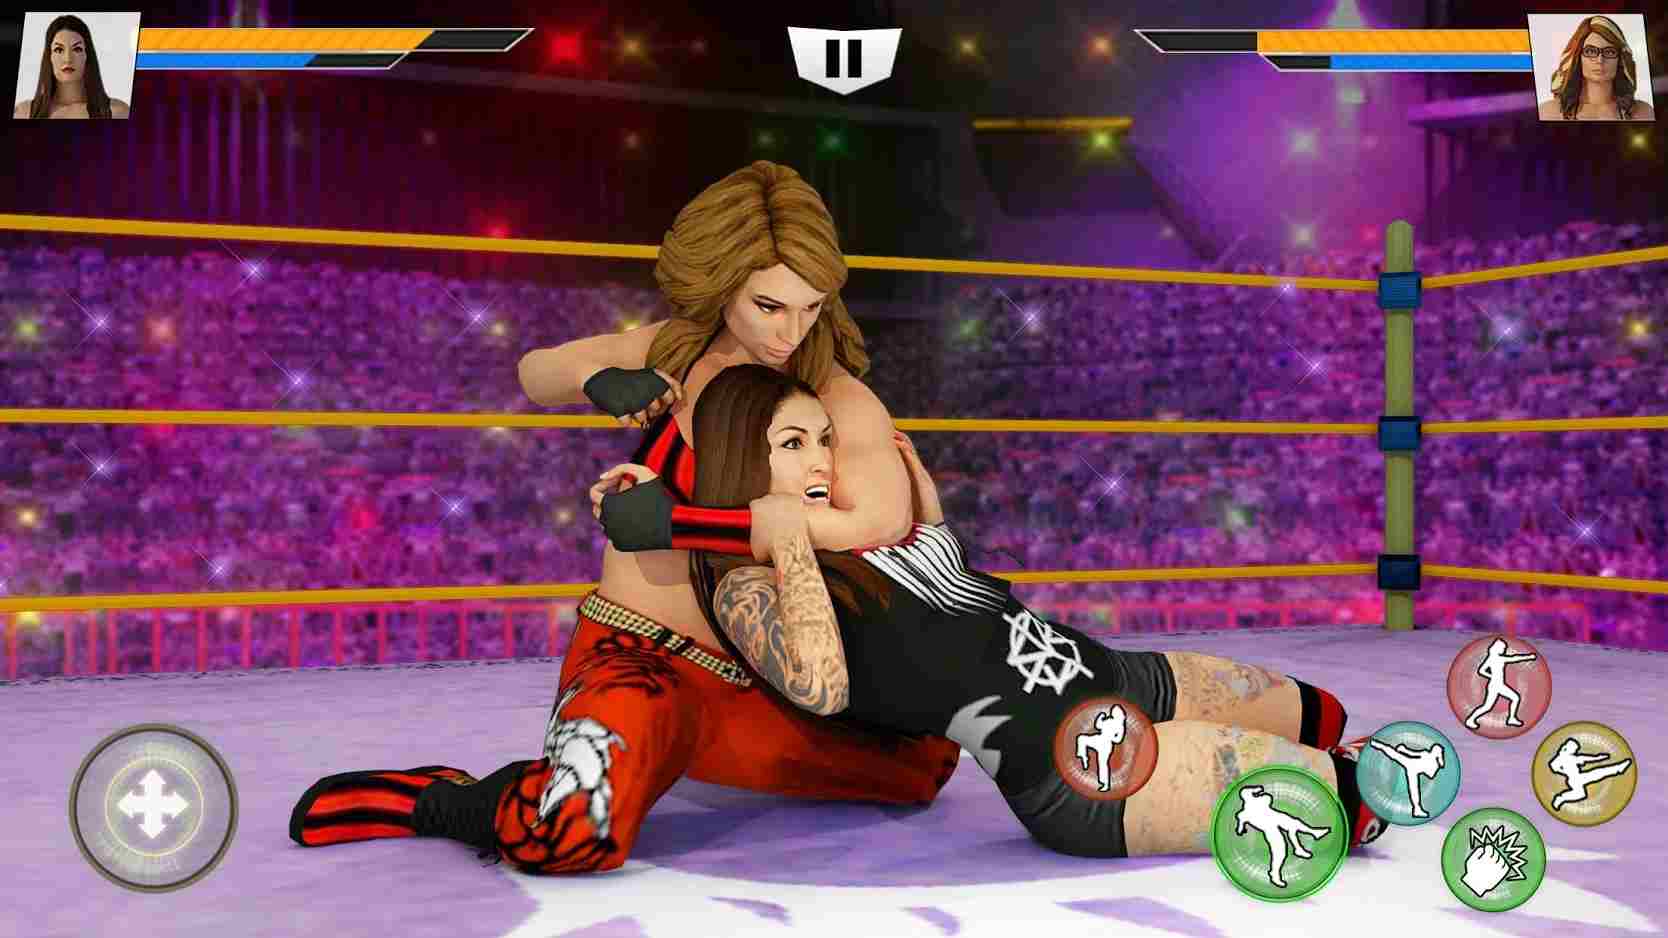 Bad Girls Wrestling Game Mod